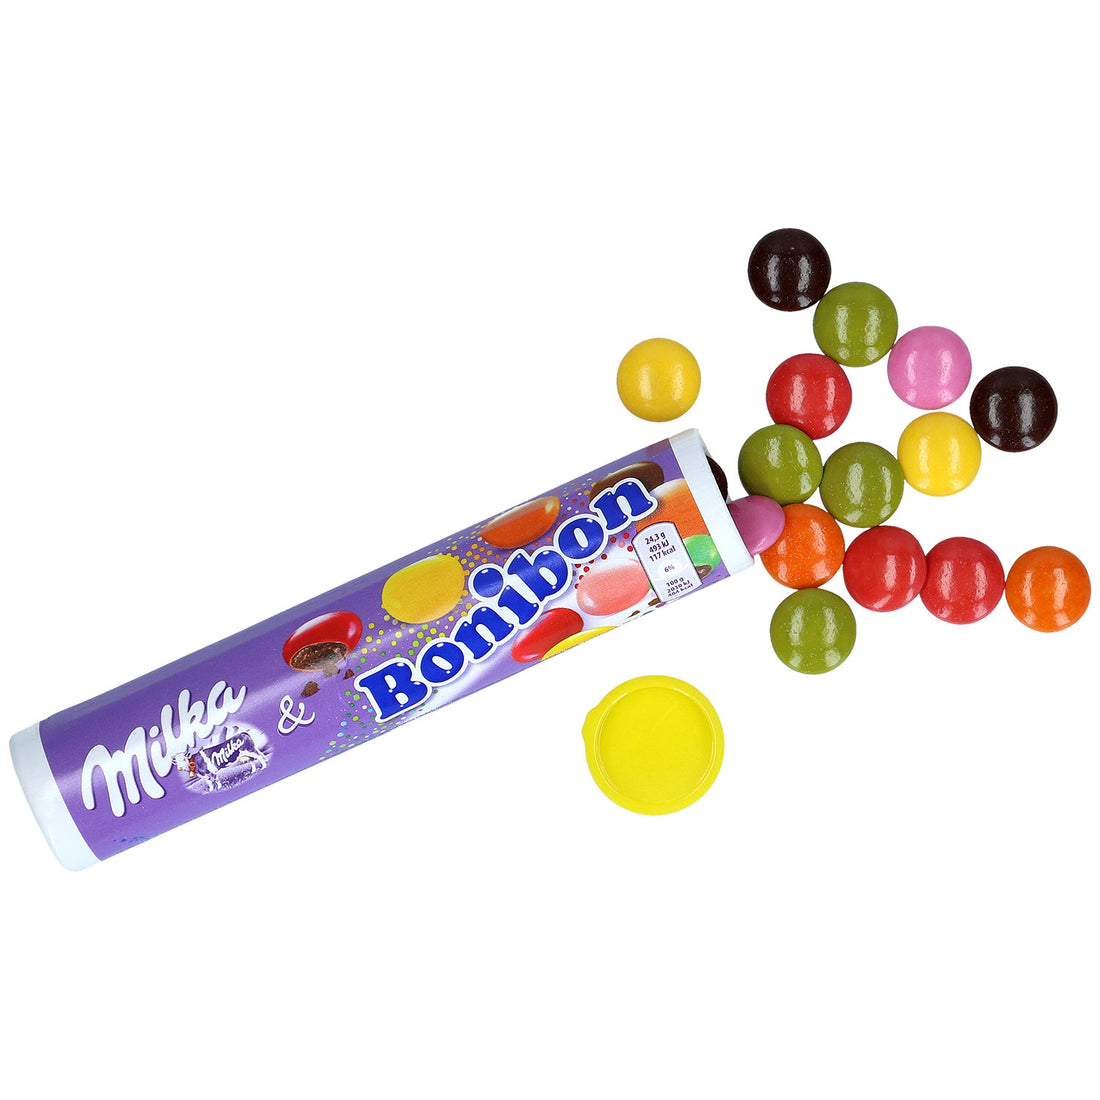 Milka Bonibon Tube pack of 24X24g (UK)